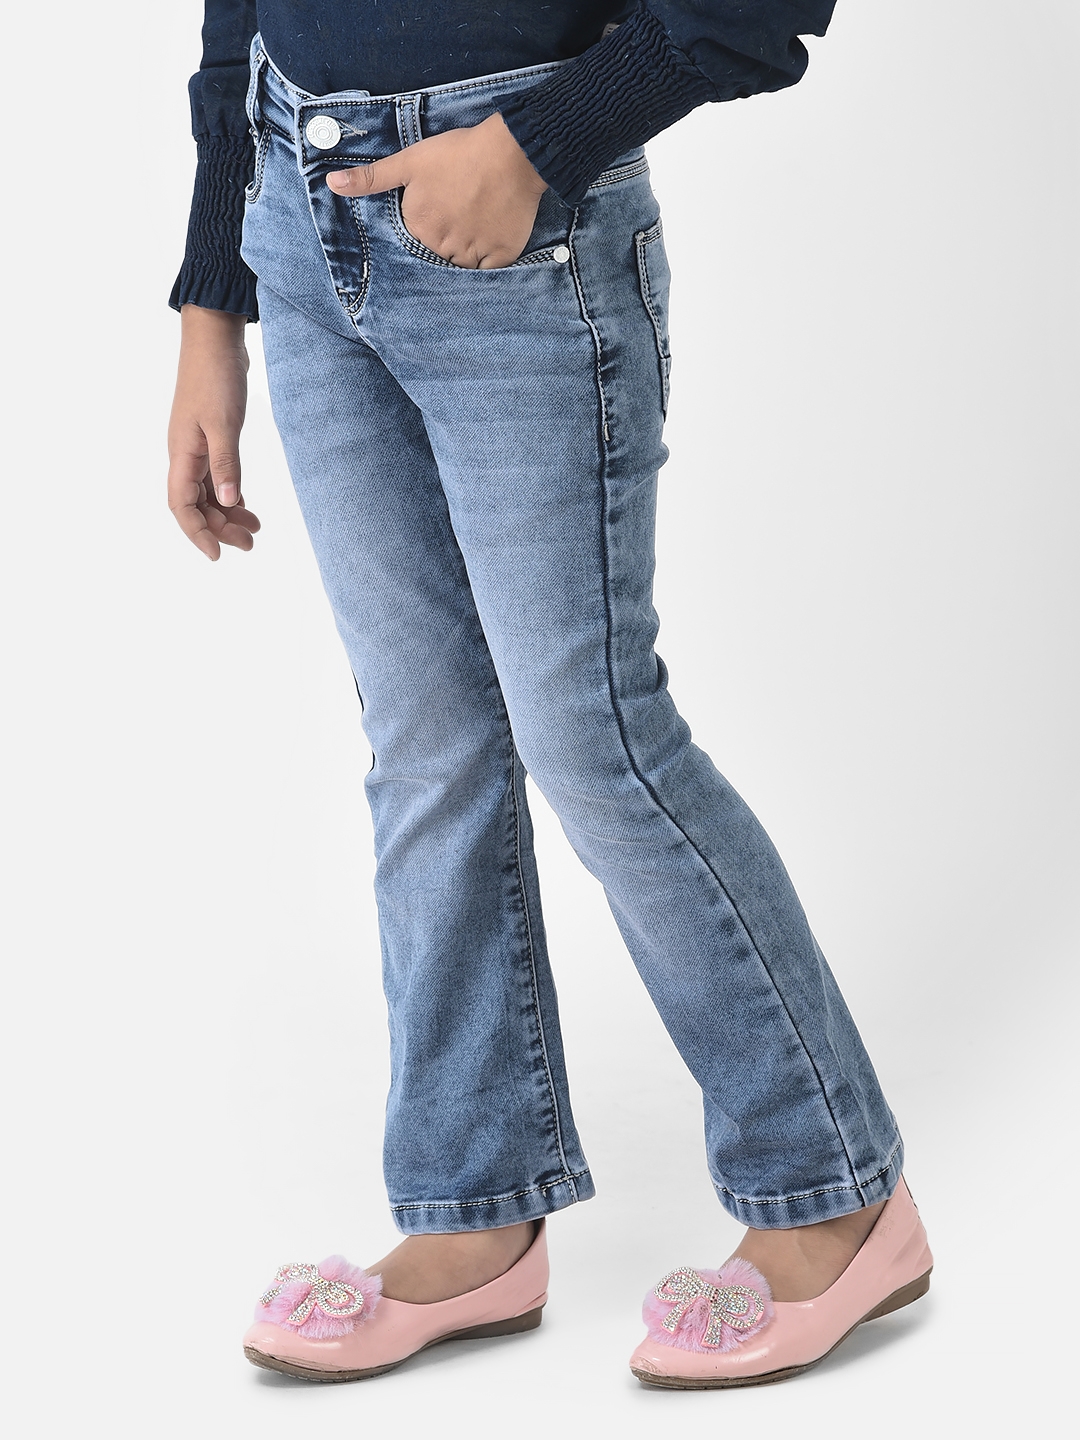 Crimsoune Club | Crimsoune Club Girls Blue Jeans in Boot Cut Fit  2